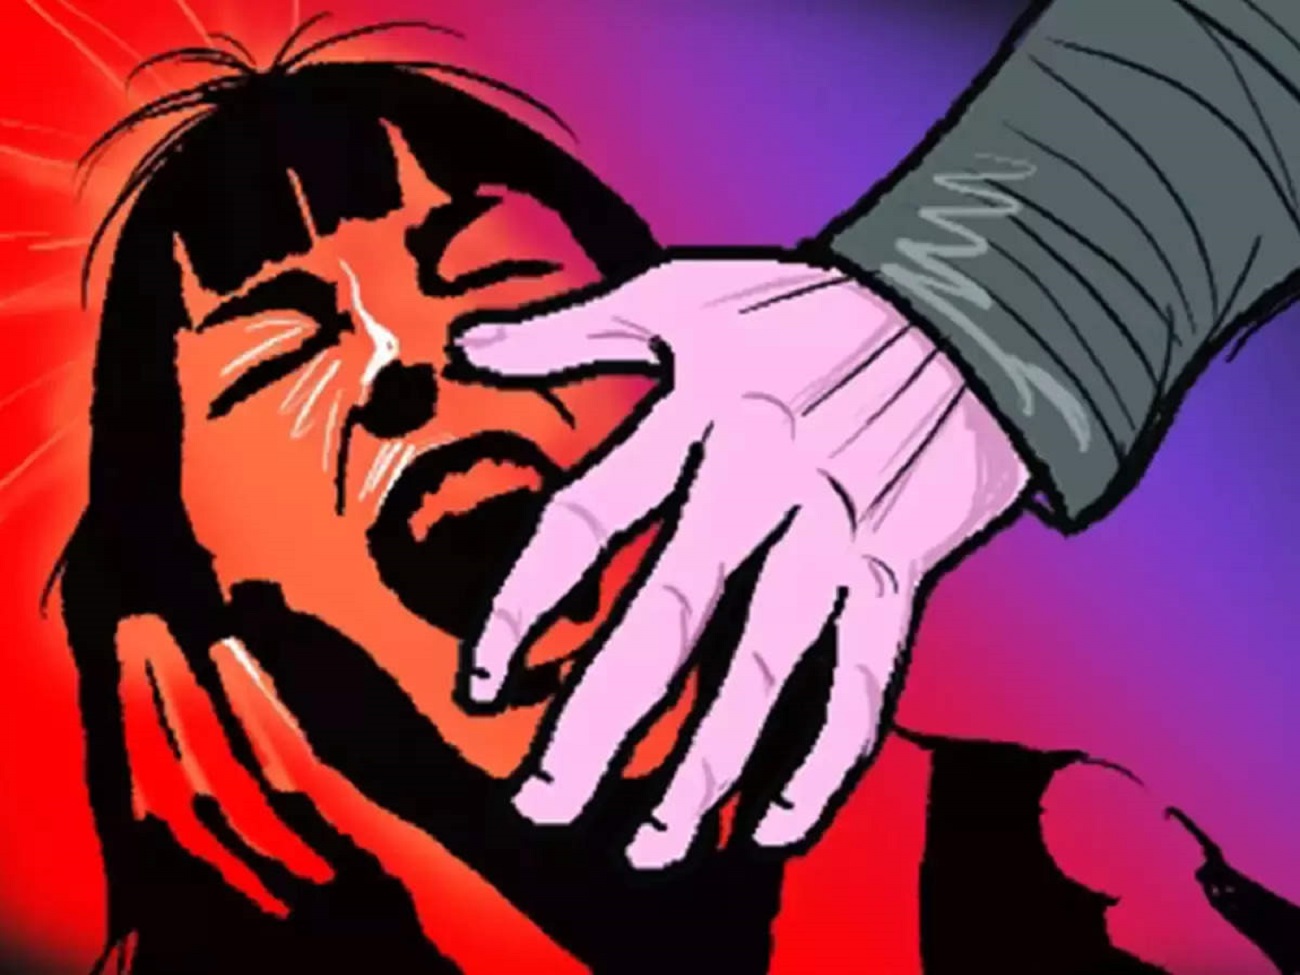 raped in uttarakhand